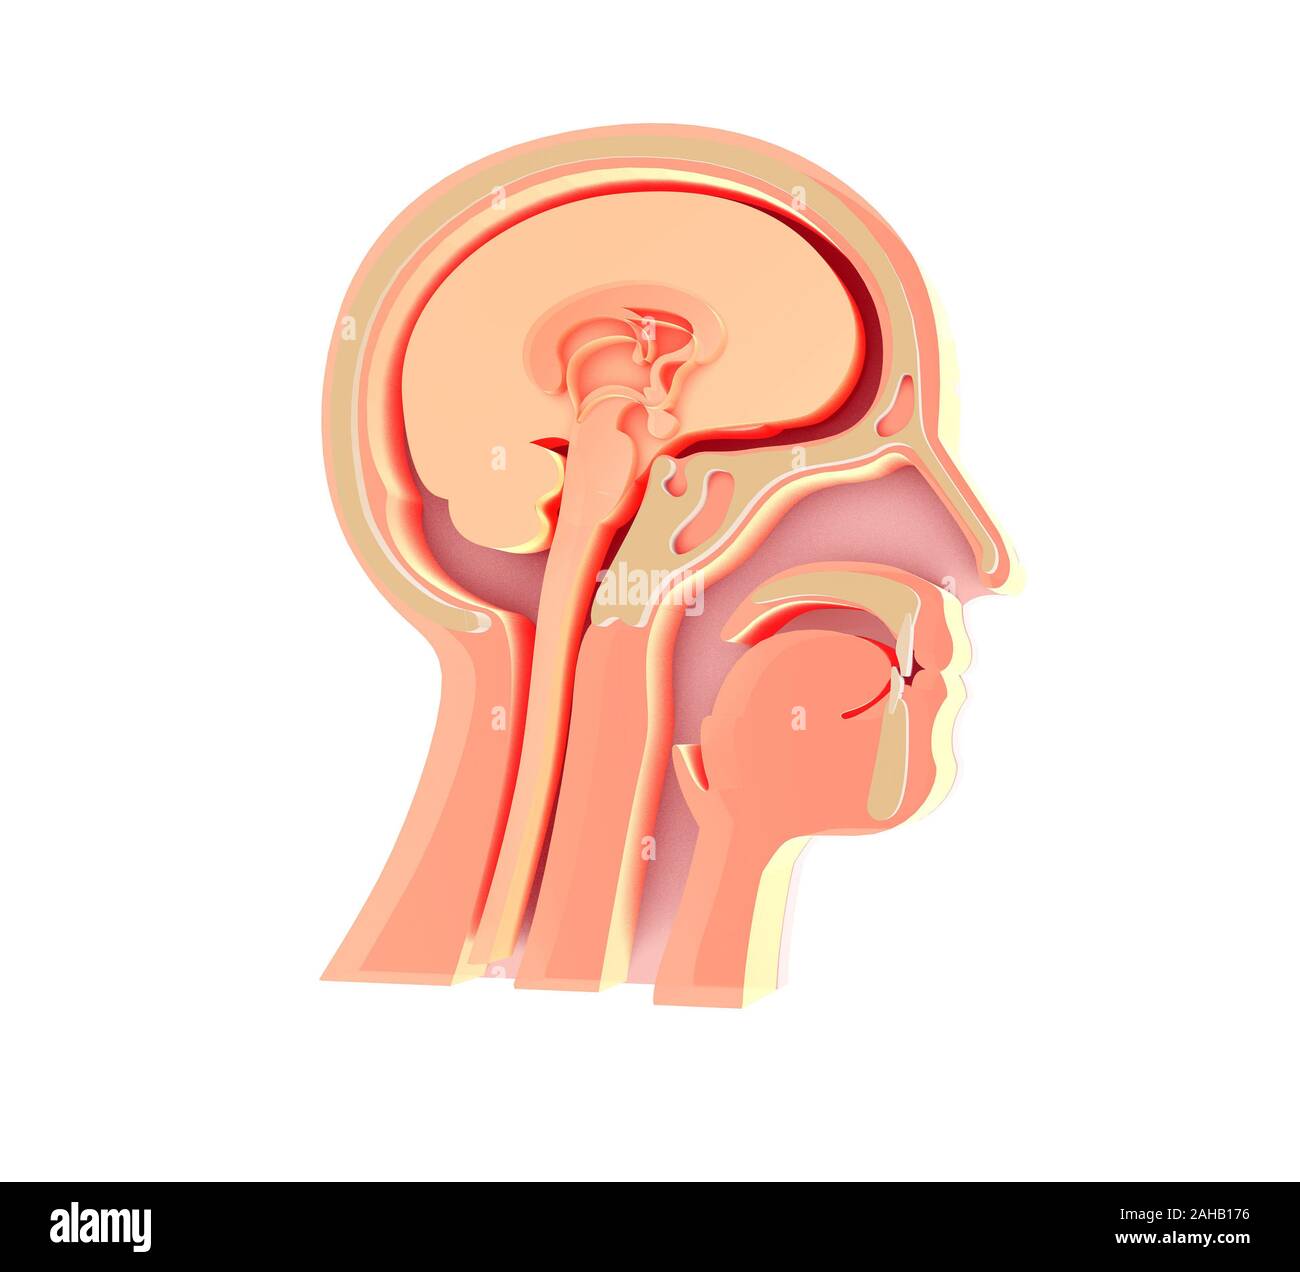 Vergrößerte Bild 3D der anatomischen Darstellung des leeren menschlichen Kopf, HNO, Otorhinolaryngologie, Kehlkopf, Nase, Zähne, Gehirn, Kopf Knochen. Stockfoto